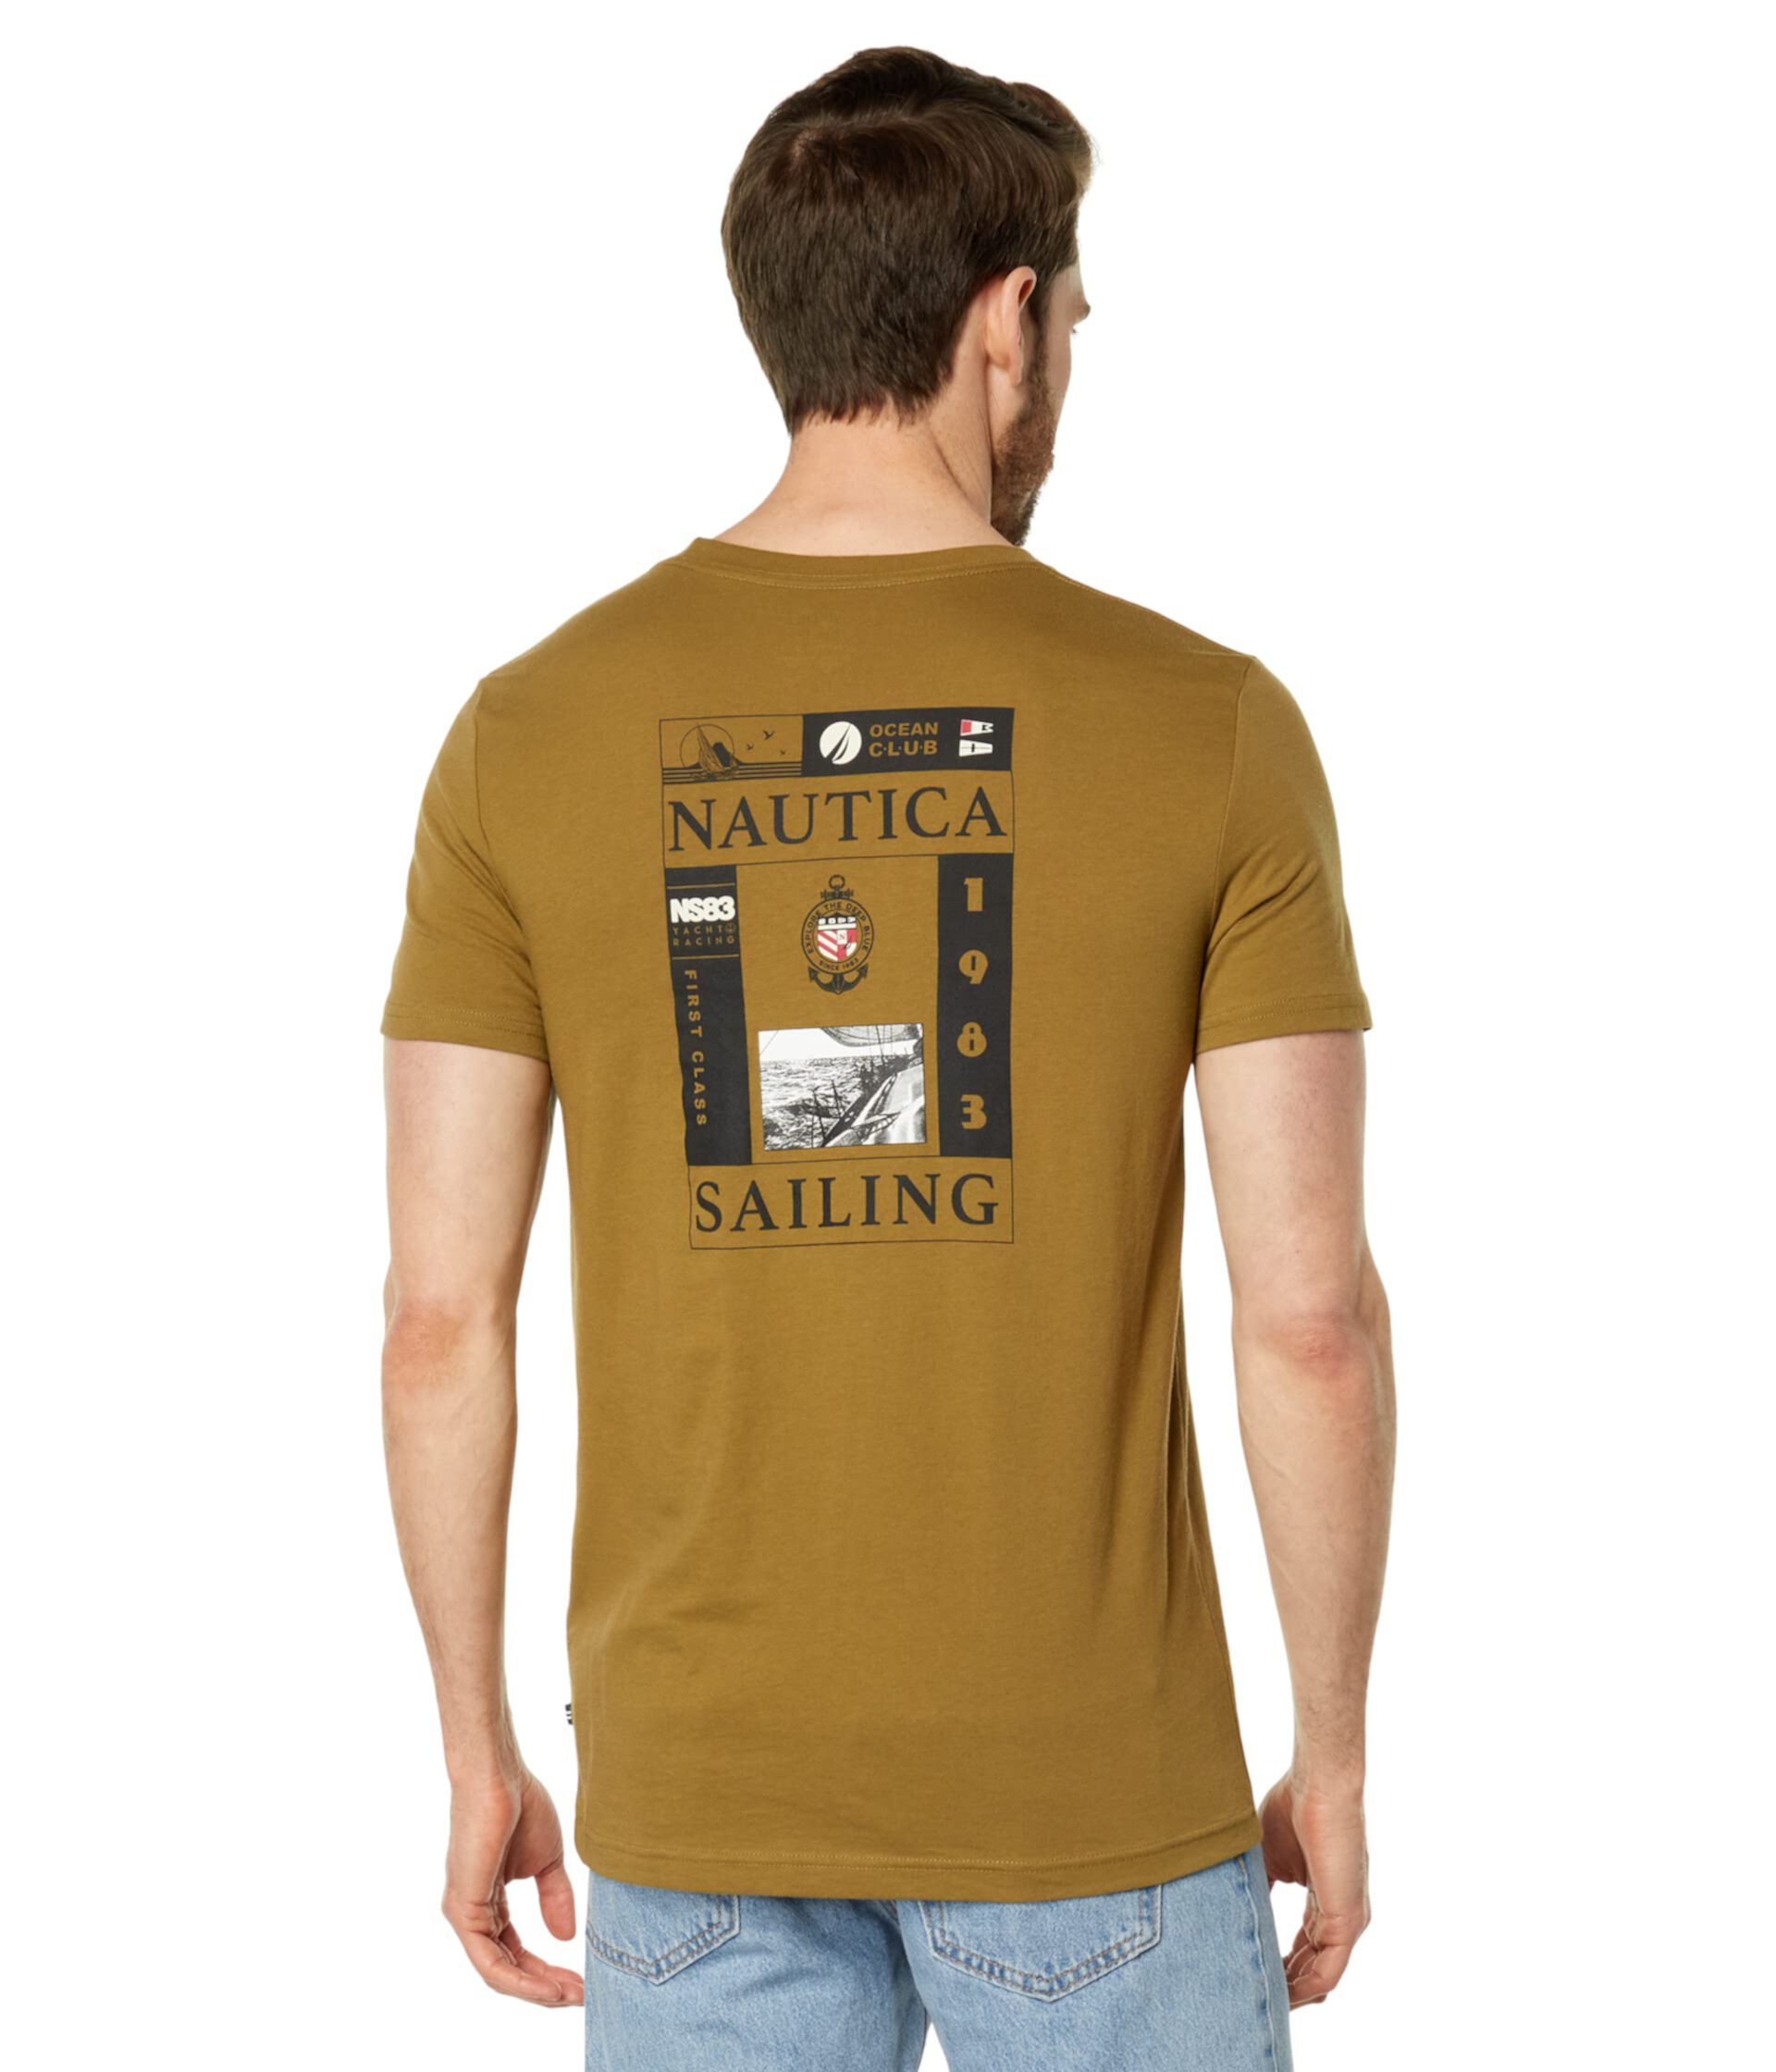 Экологически чистая футболка с парусным спортом Nautica